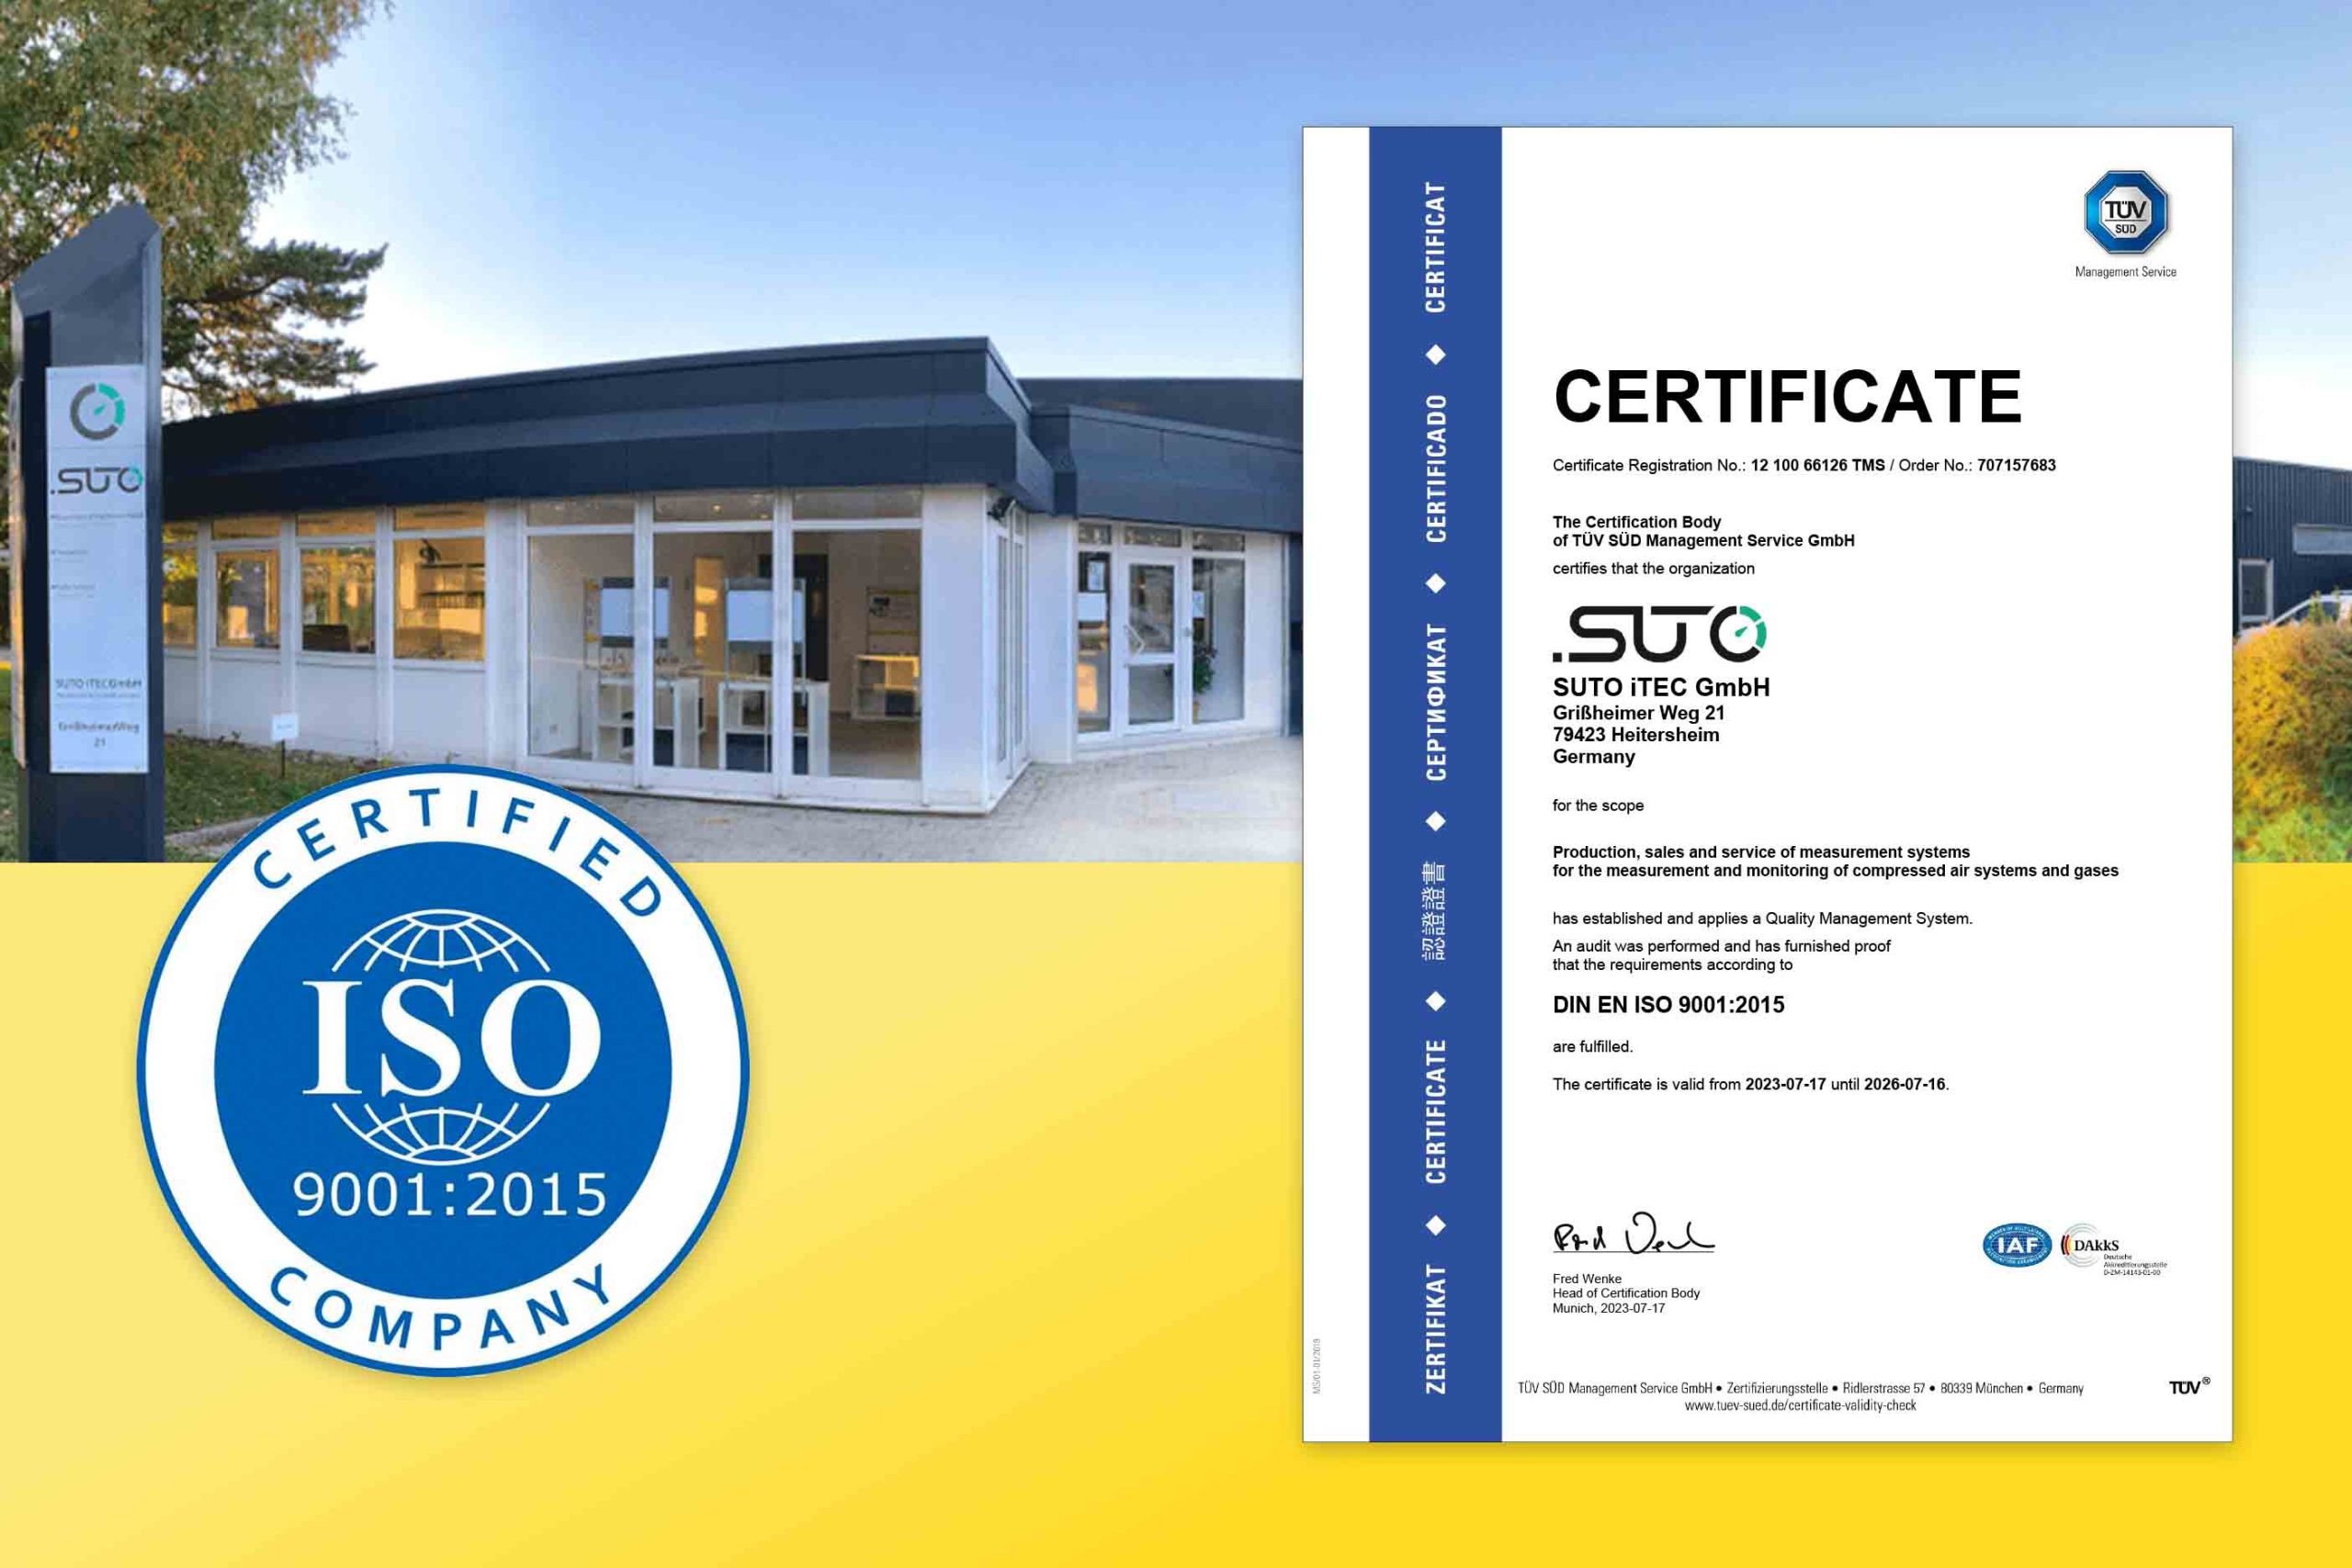 SUTO iTEC-Zentrale in Deutschland erhält ISO 9001:2015 Zertifizierung